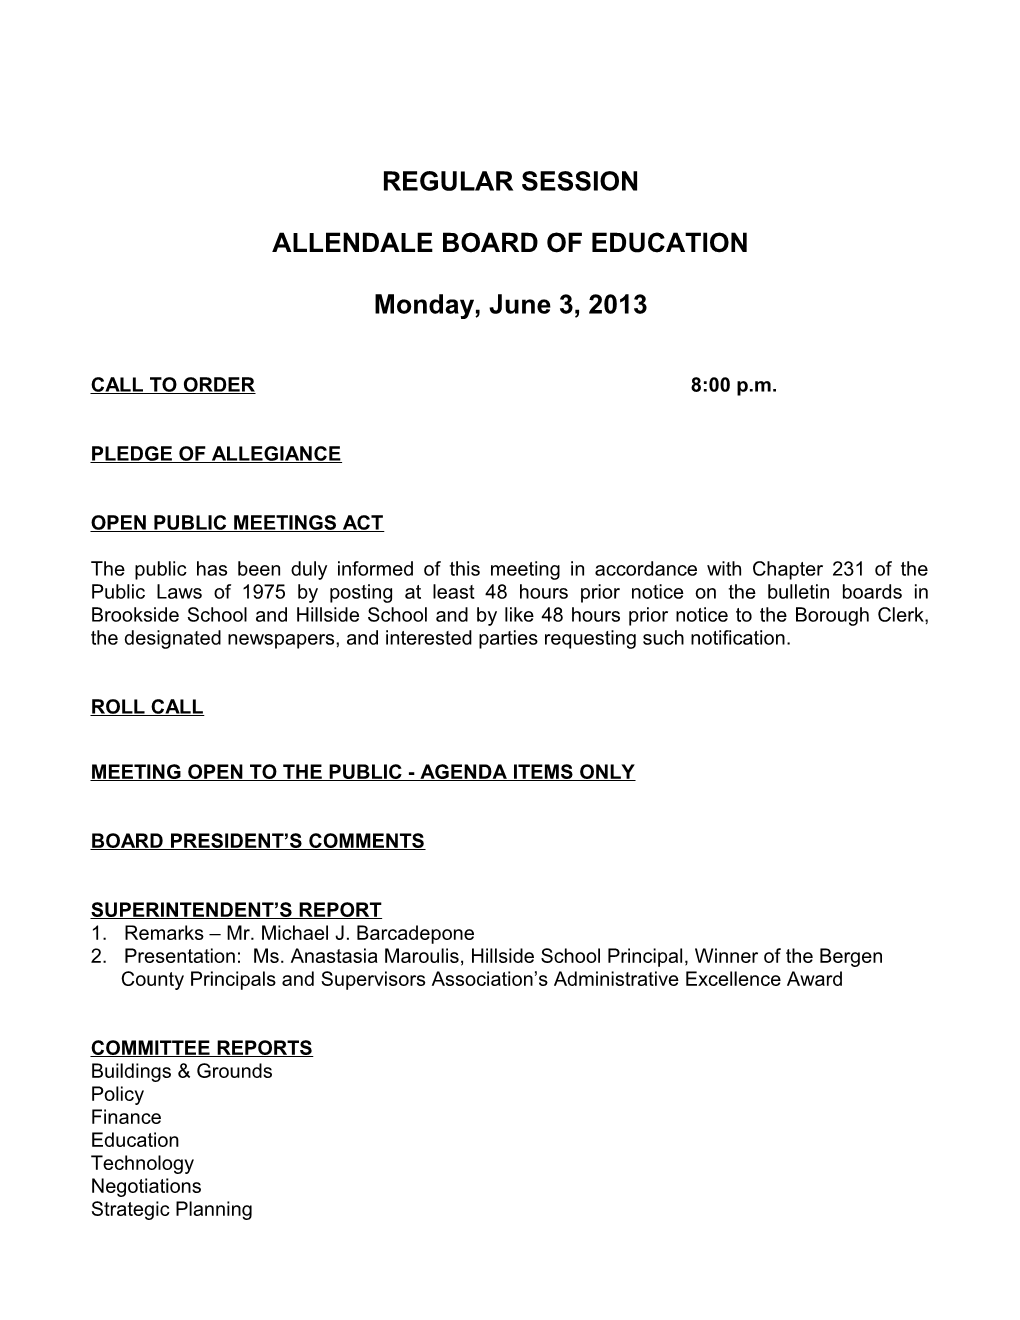 Allendale Board of Education